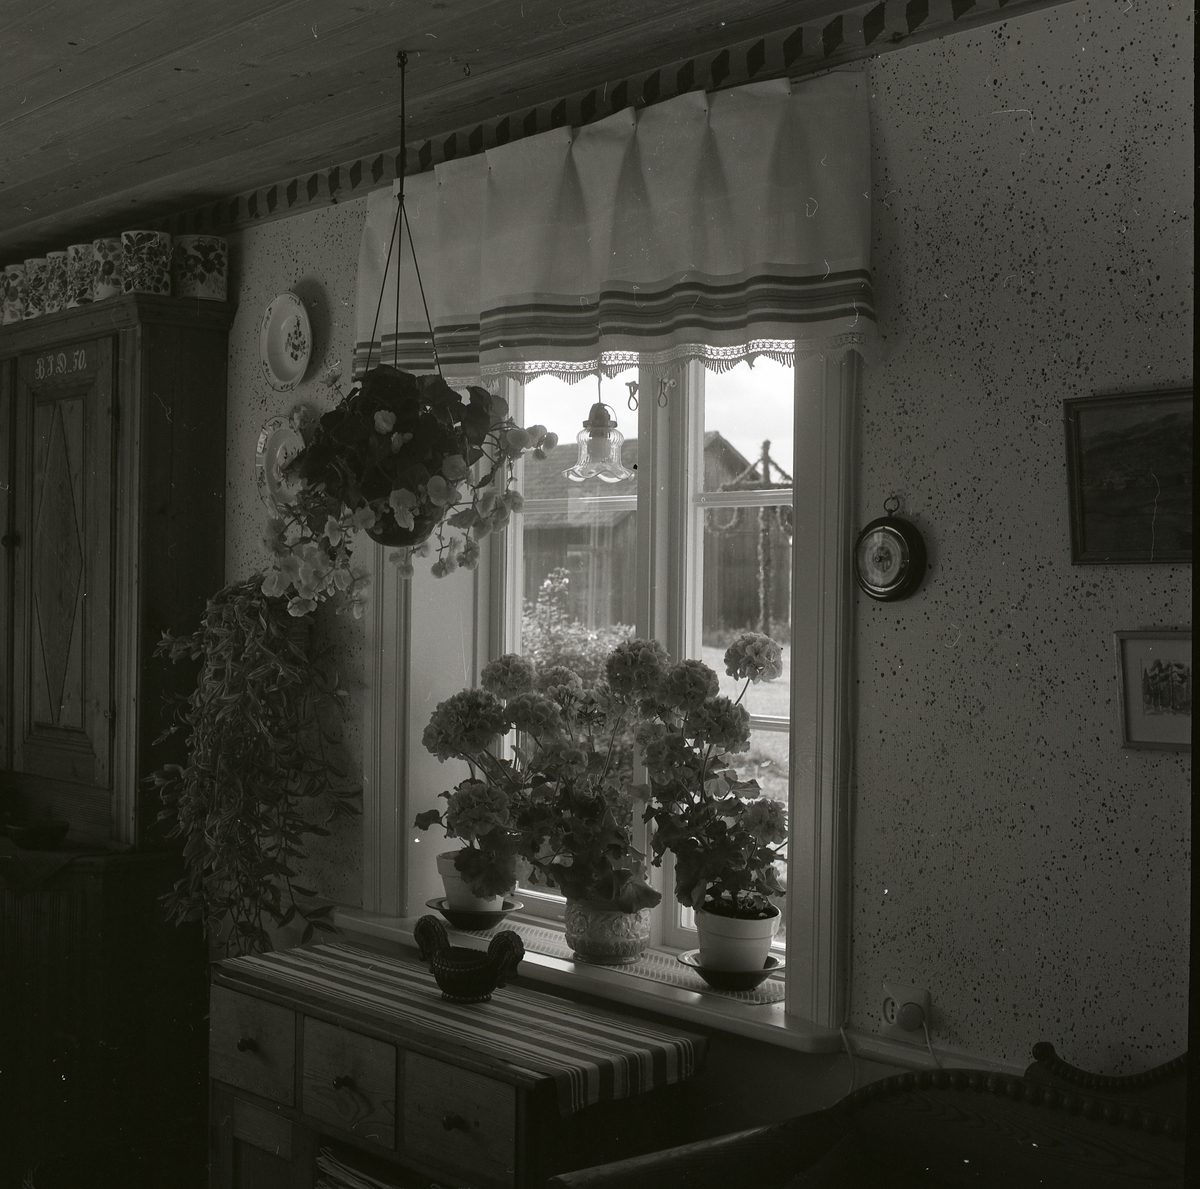 Blommor så långt ögat kan nå, oavsett om blicken riktas inåt eller utåt i detta köksfönster. Utanför fönstret fröjdas sommarens blomster och midsommarstången står fortfarande kvar denna julimånad 1979. Innanför fönstret pryder blommorna fönstersmygen samtidigt som de hänger i amplar från tak och vägg. Blommorna är inte det enda som pryder rummet; dukar, gardiner och målade skåp bidrar också till en ombonad stämning.